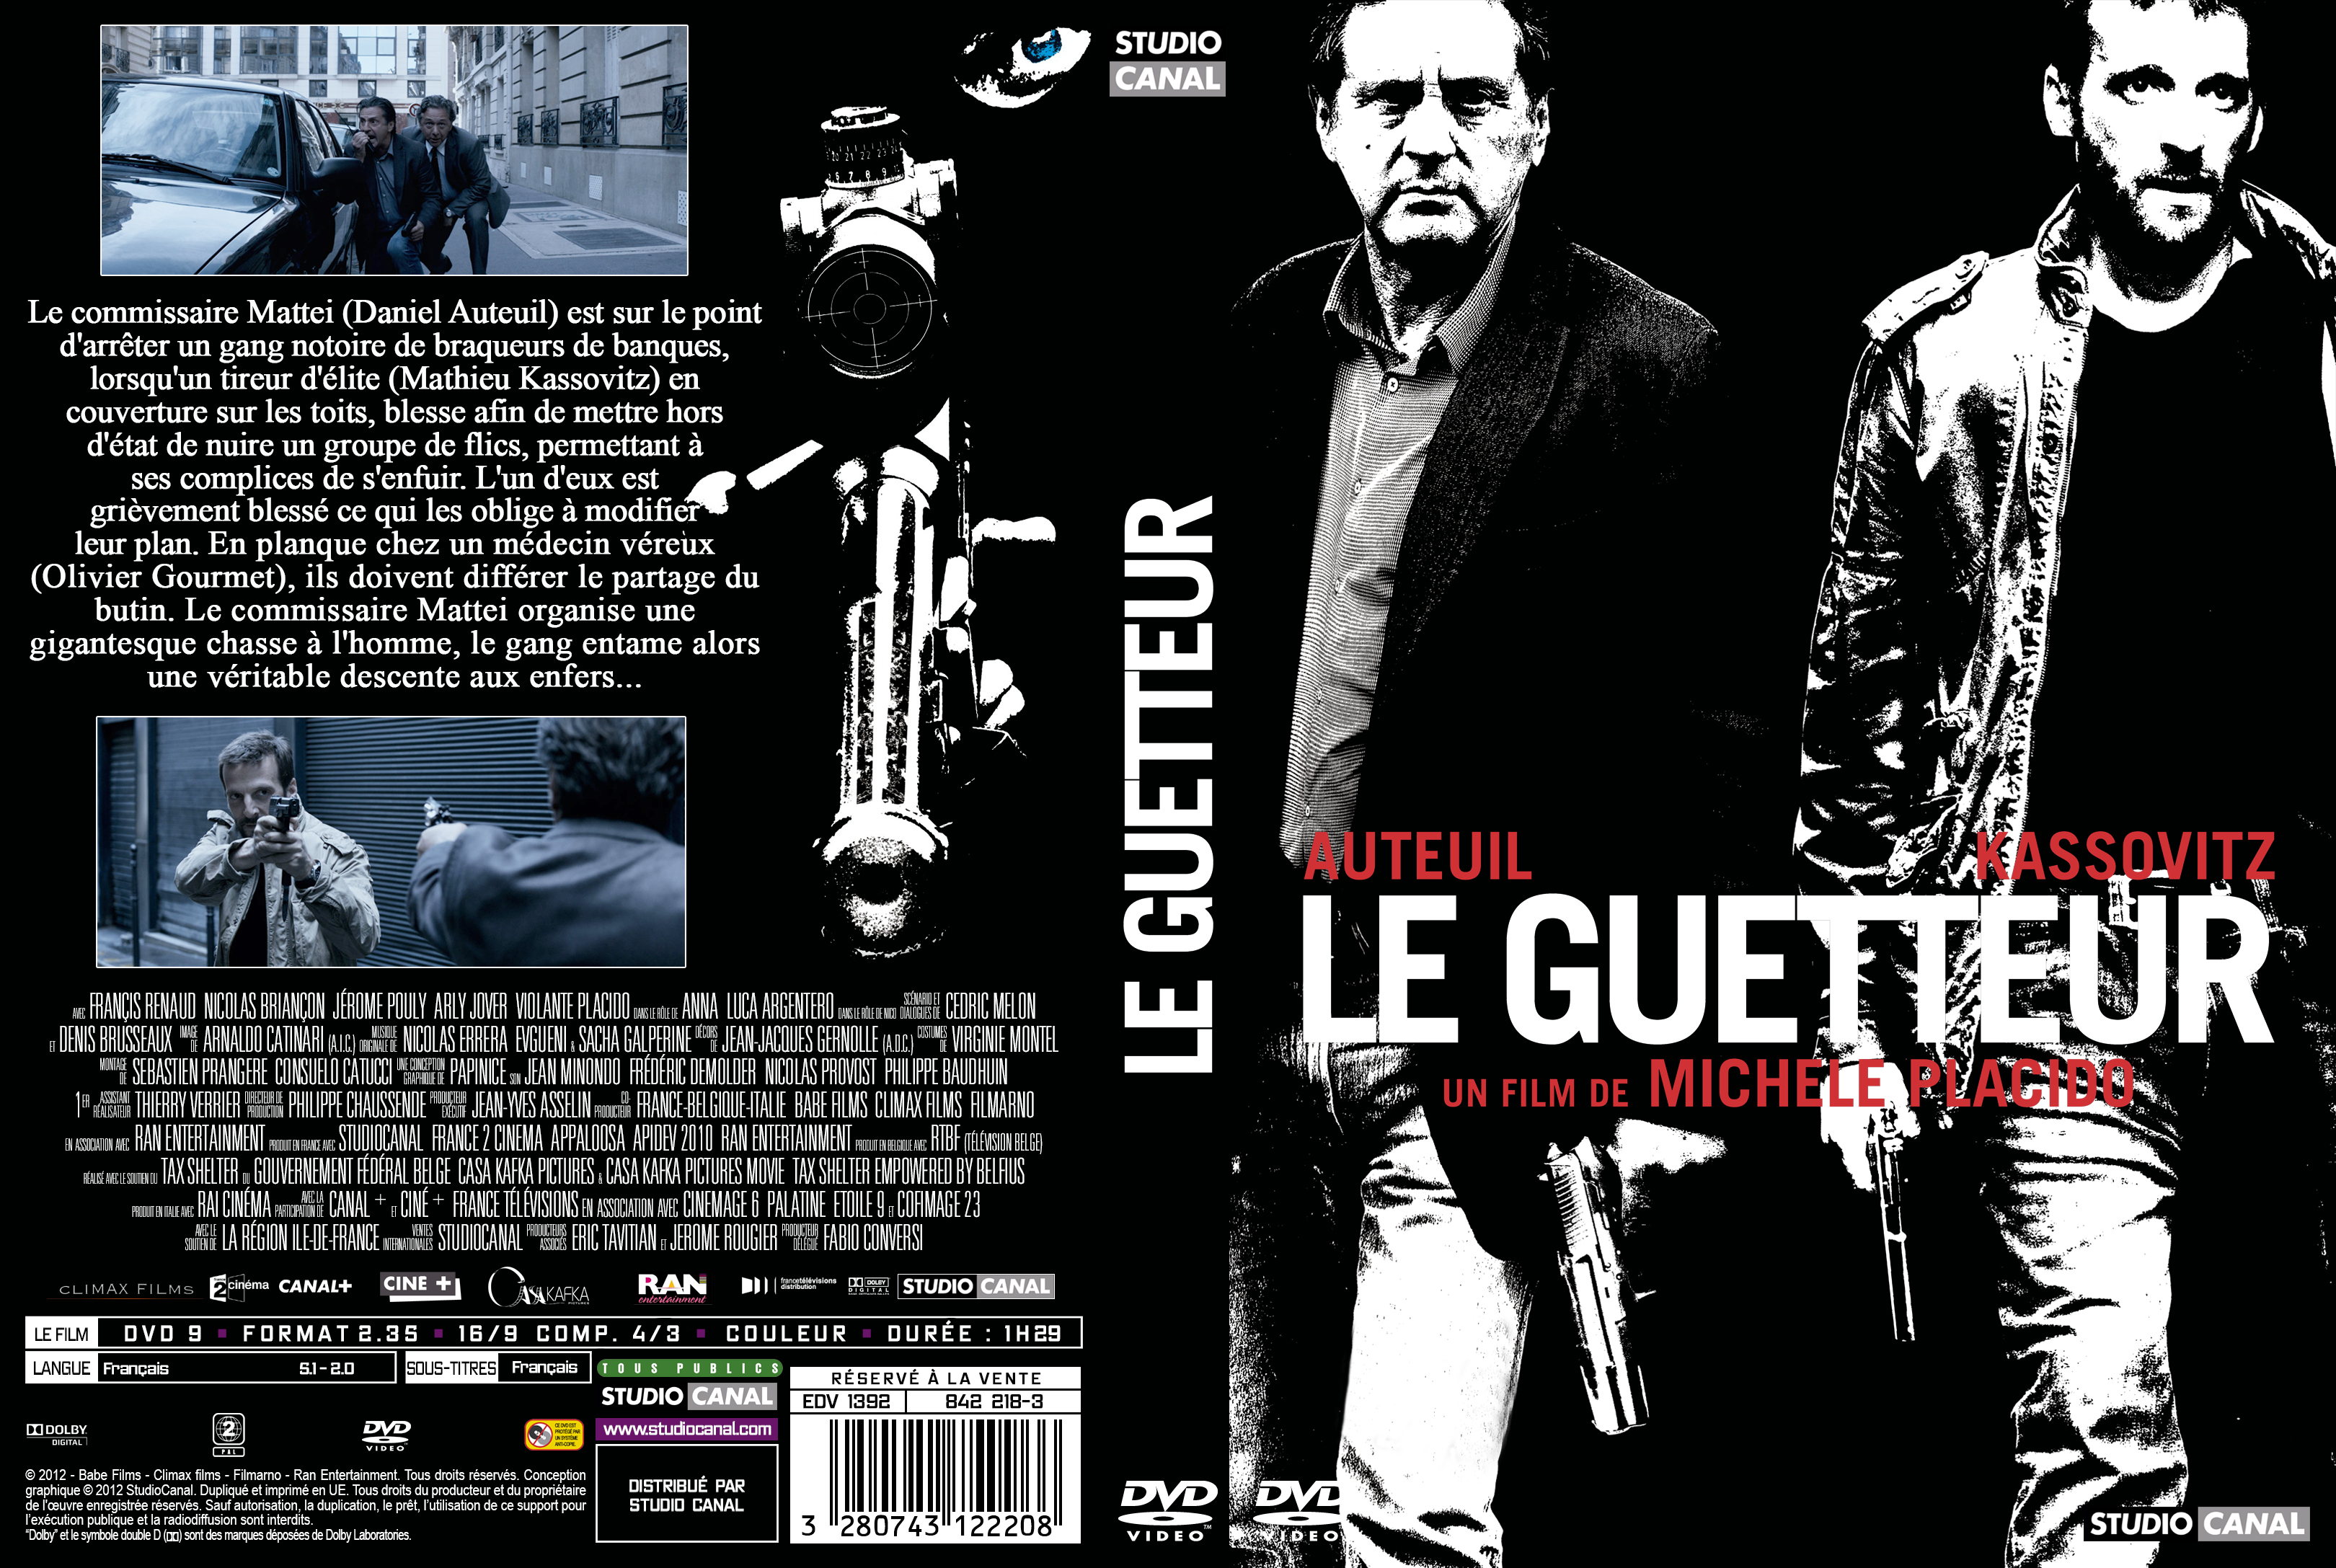 Jaquette DVD Le guetteur custom